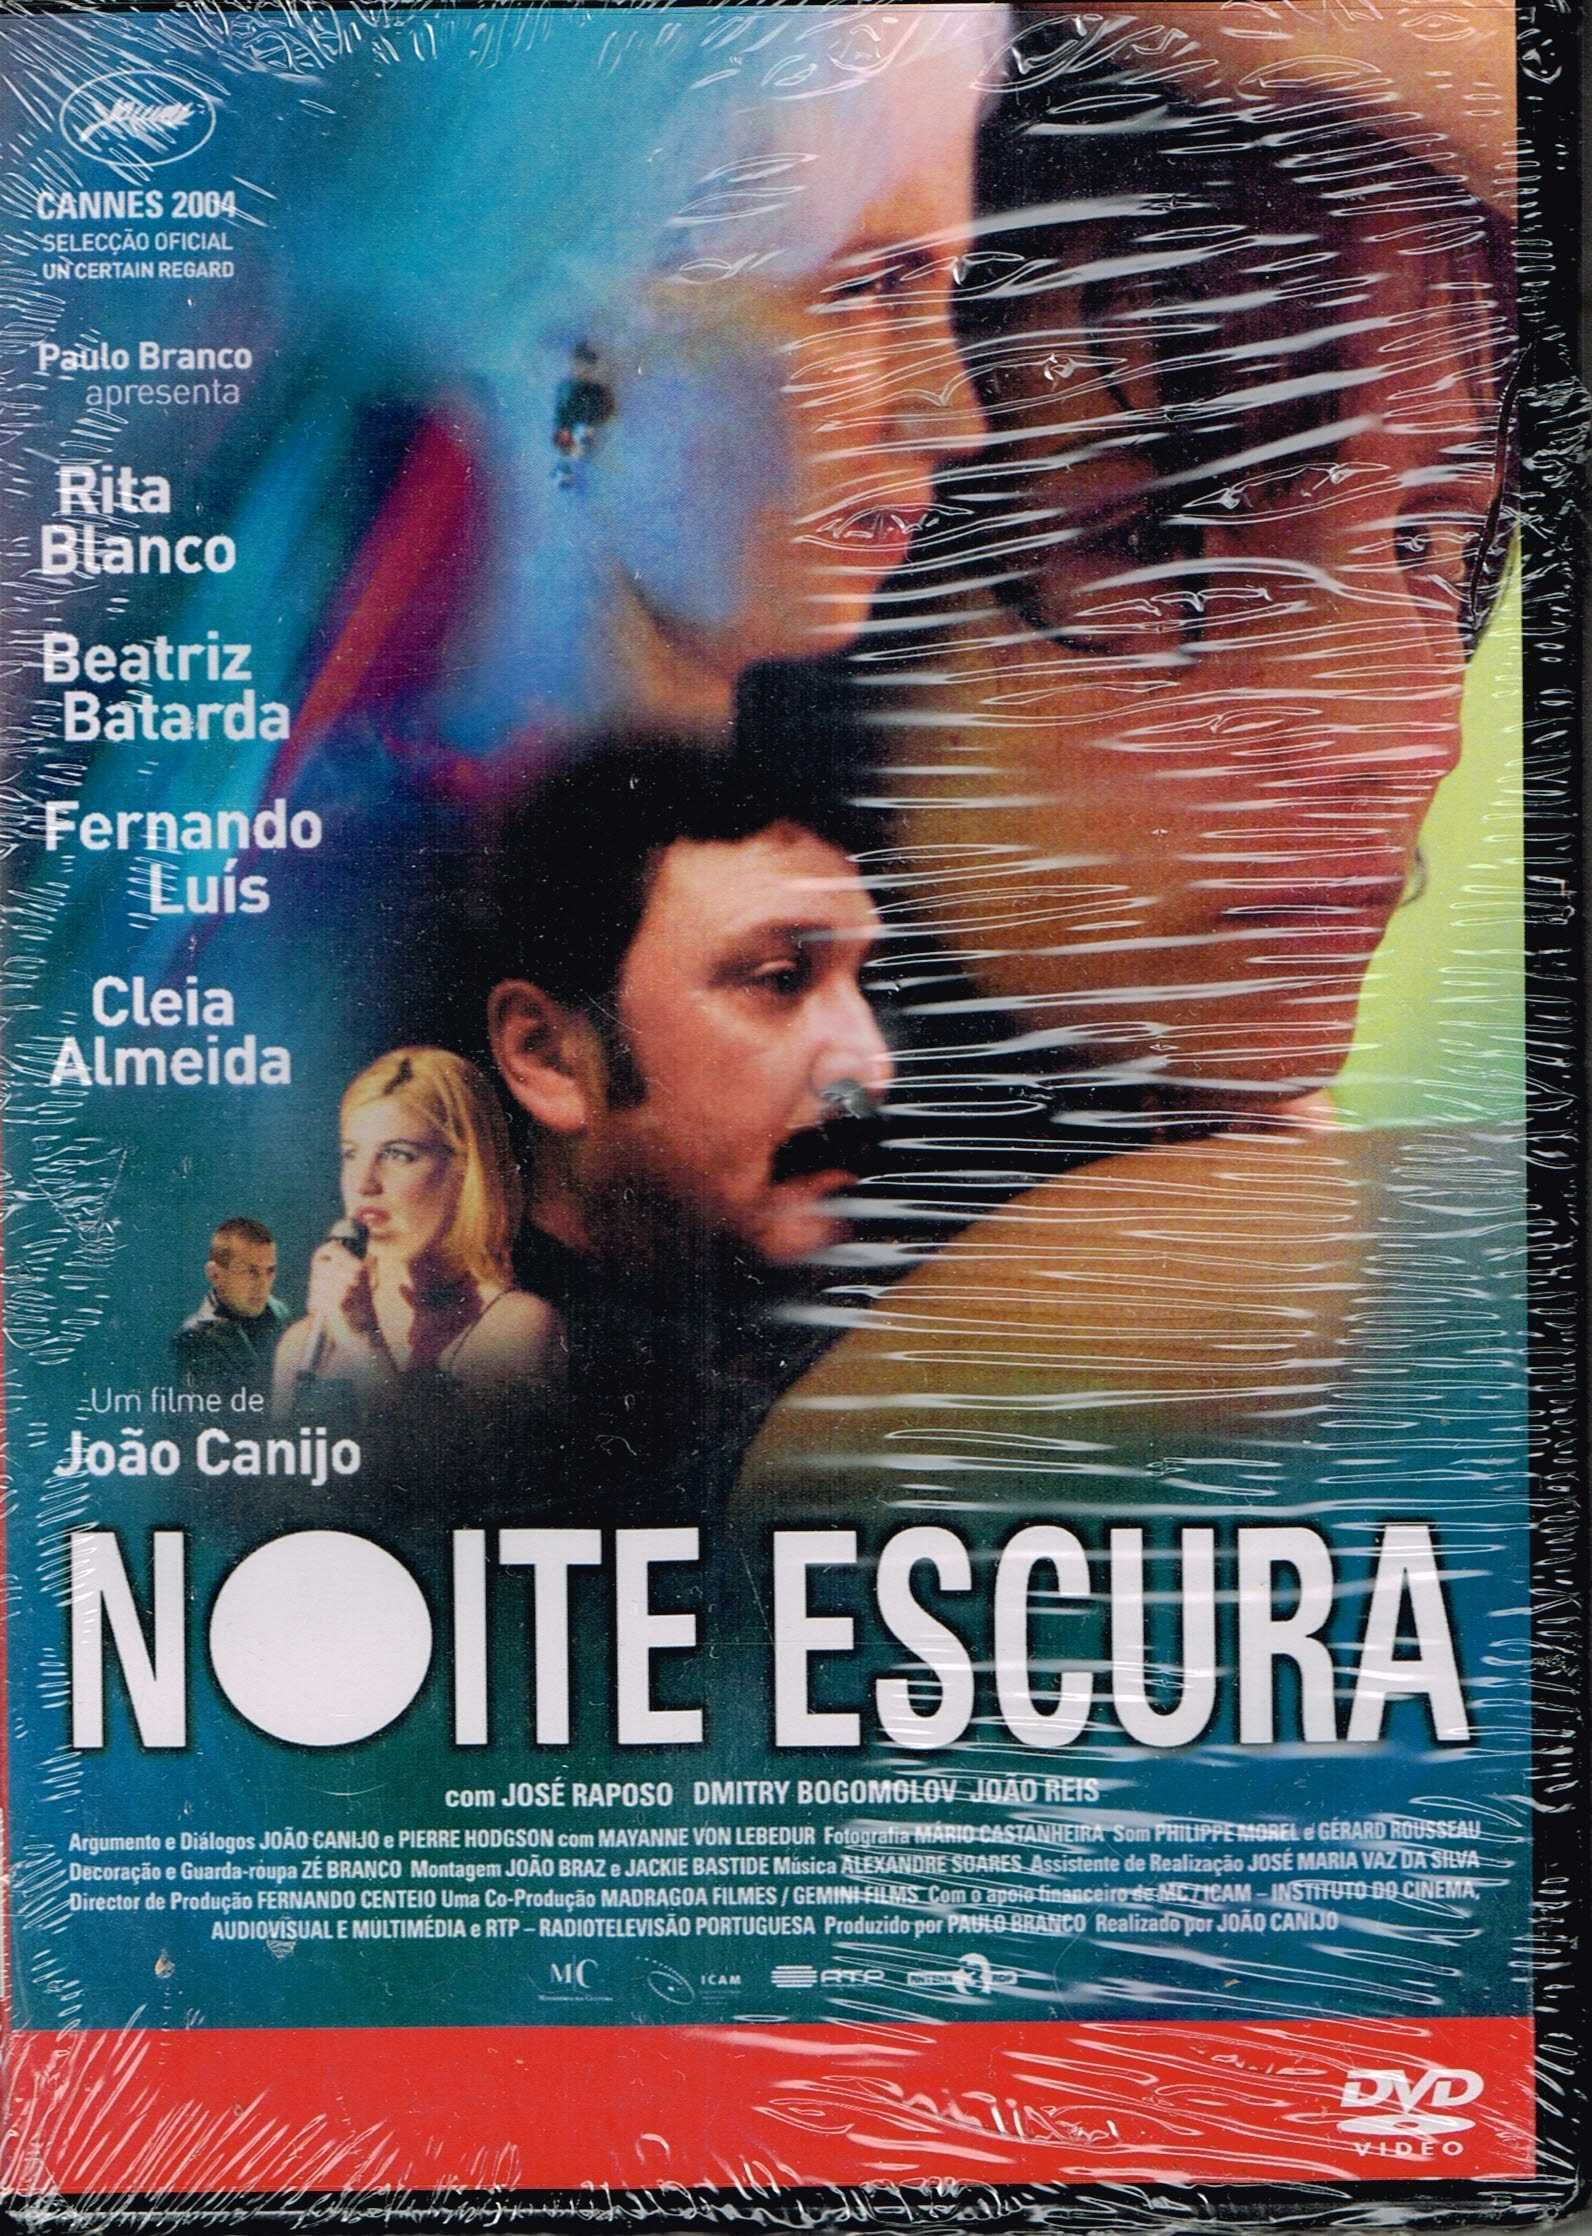 Filme em DVD: Noite Escura (João Canijo) - NOVO! A ESTREAR! SELADO!